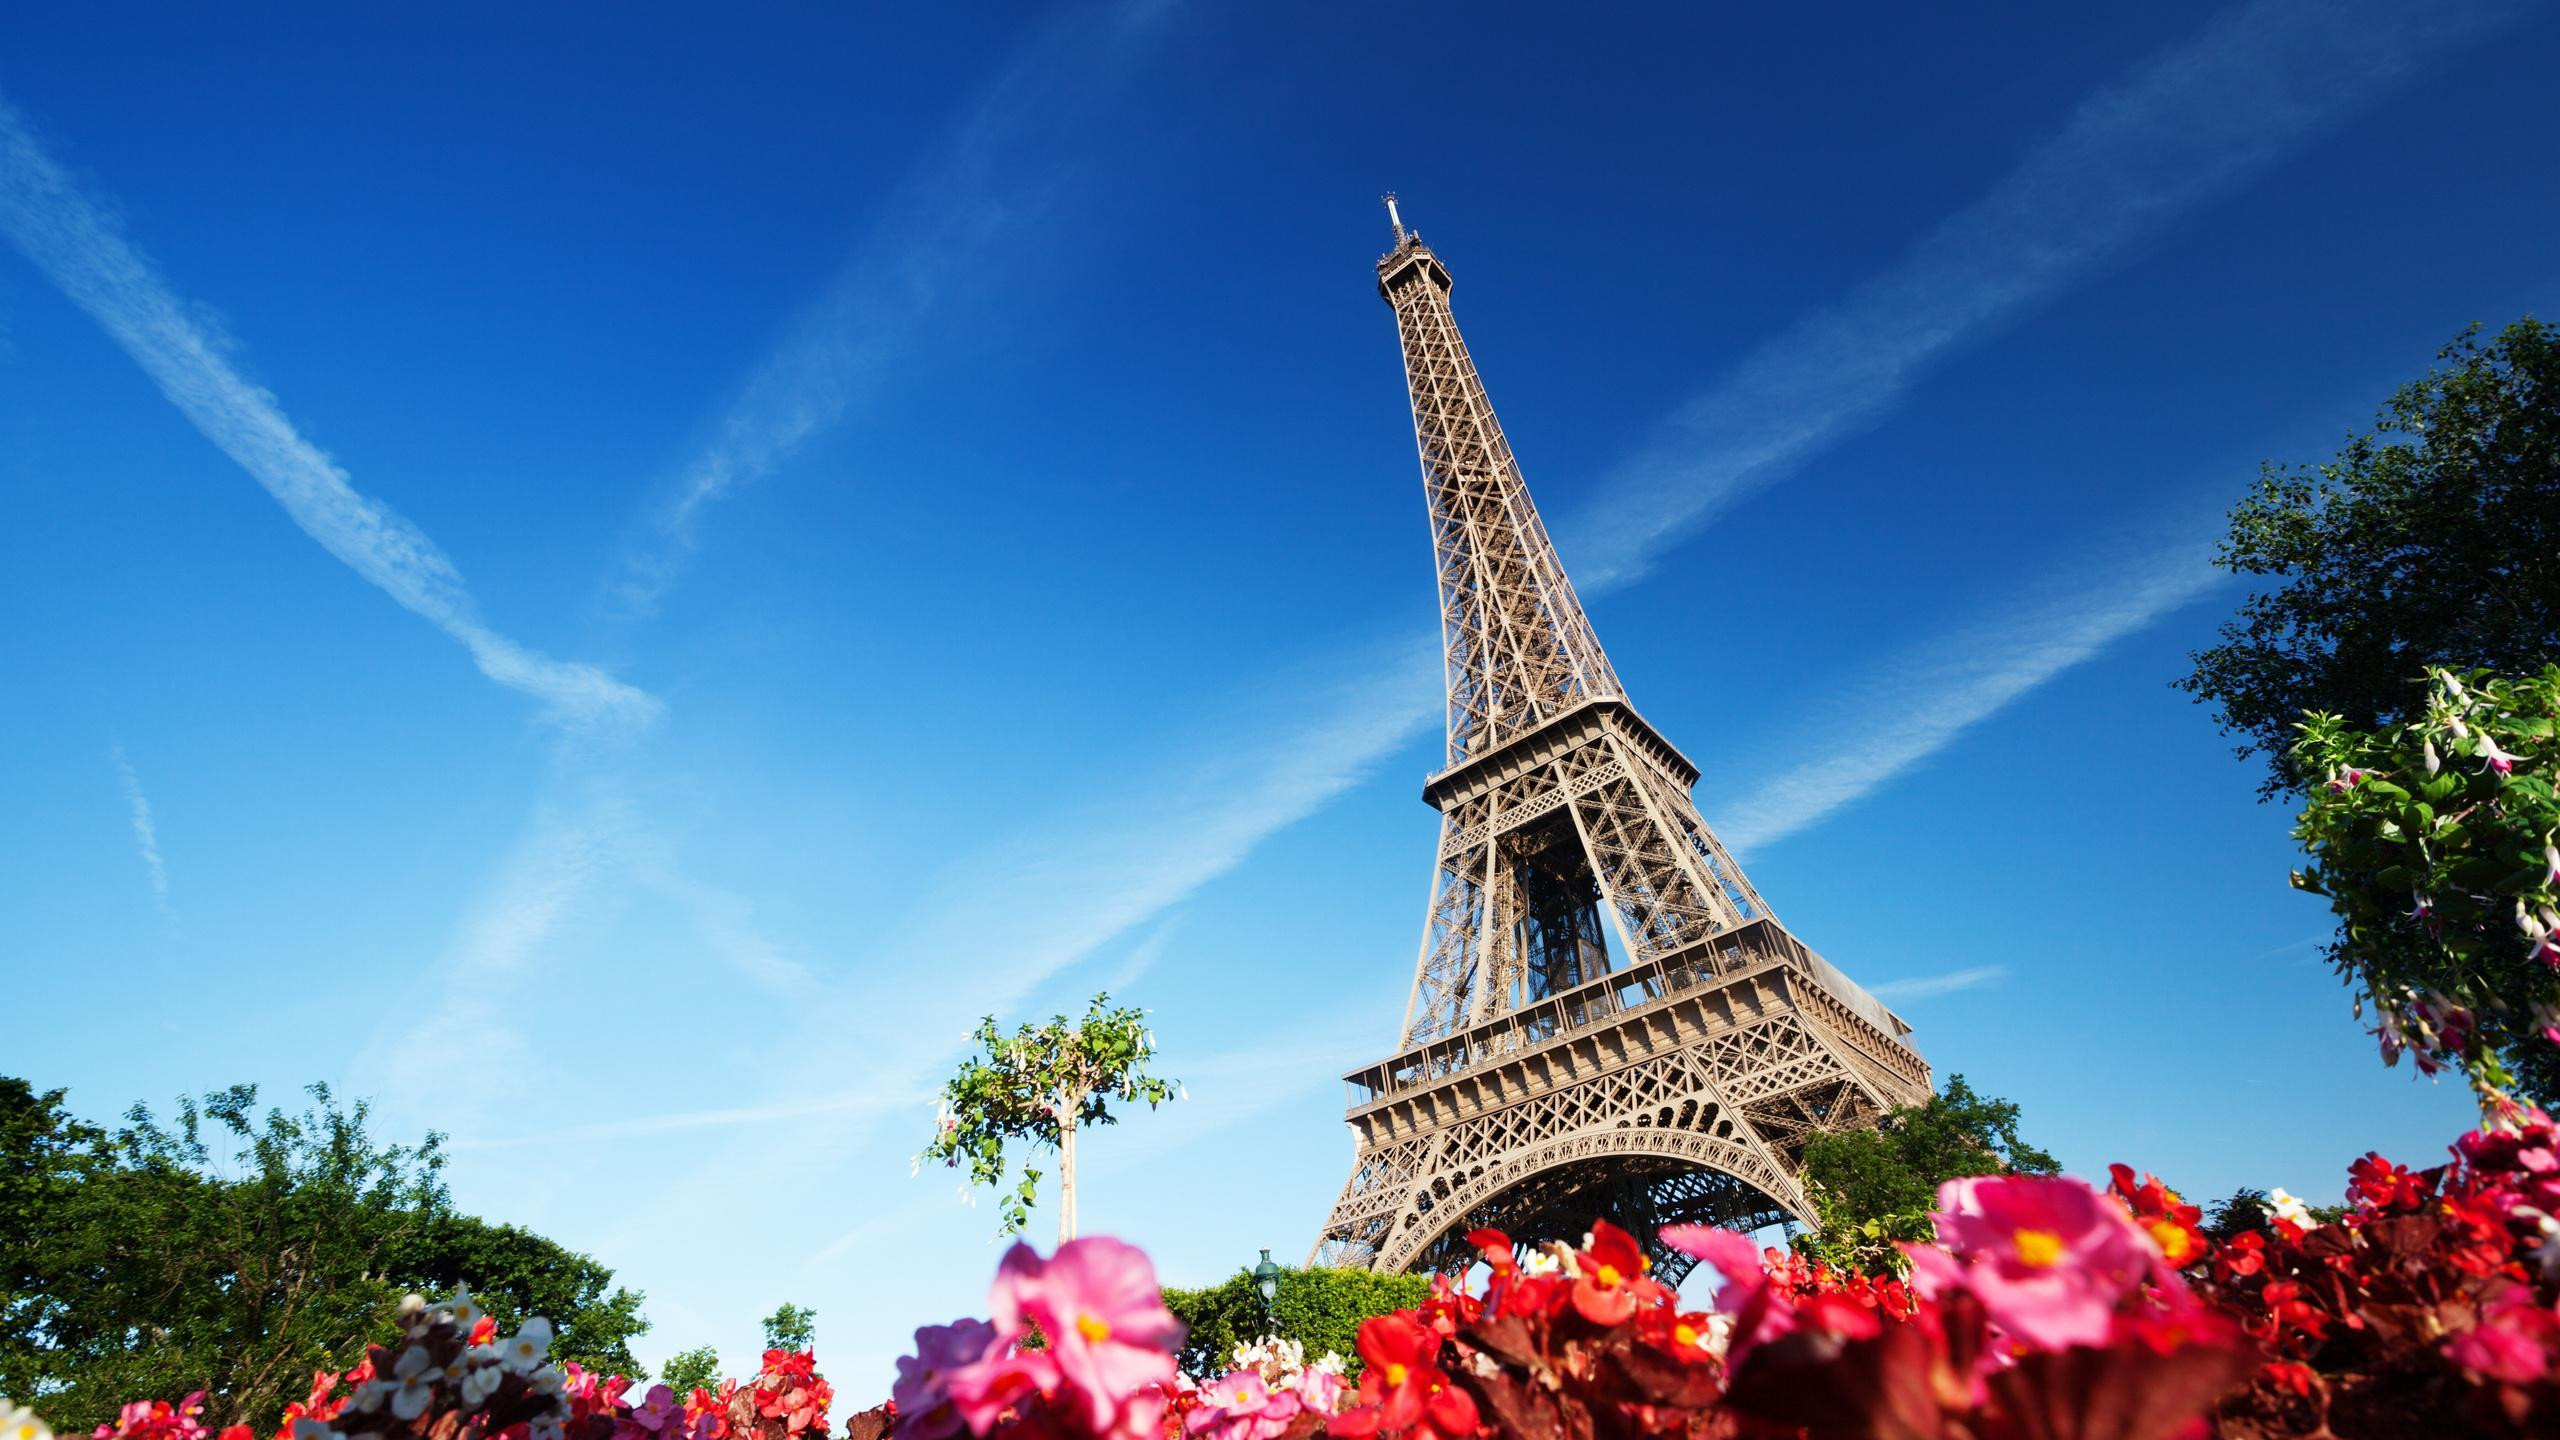 Background tháp Eiffel trời trong xanh